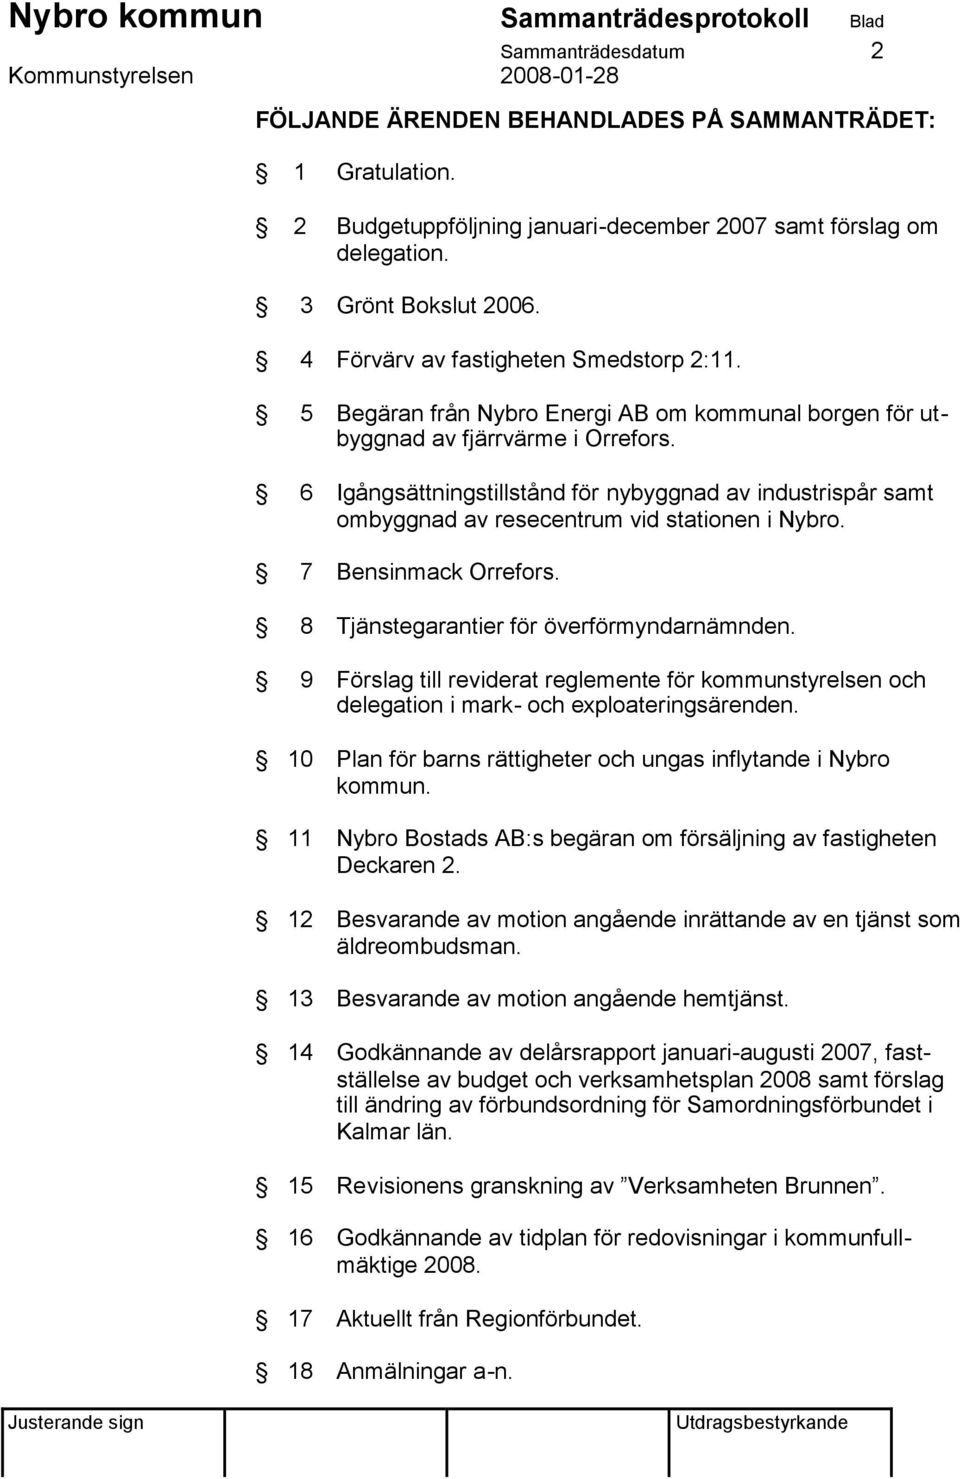 6 Igångsättningstillstånd för nybyggnad av industrispår samt ombyggnad av resecentrum vid stationen i Nybro. 7 Bensinmack Orrefors. 8 Tjänstegarantier för överförmyndarnämnden.